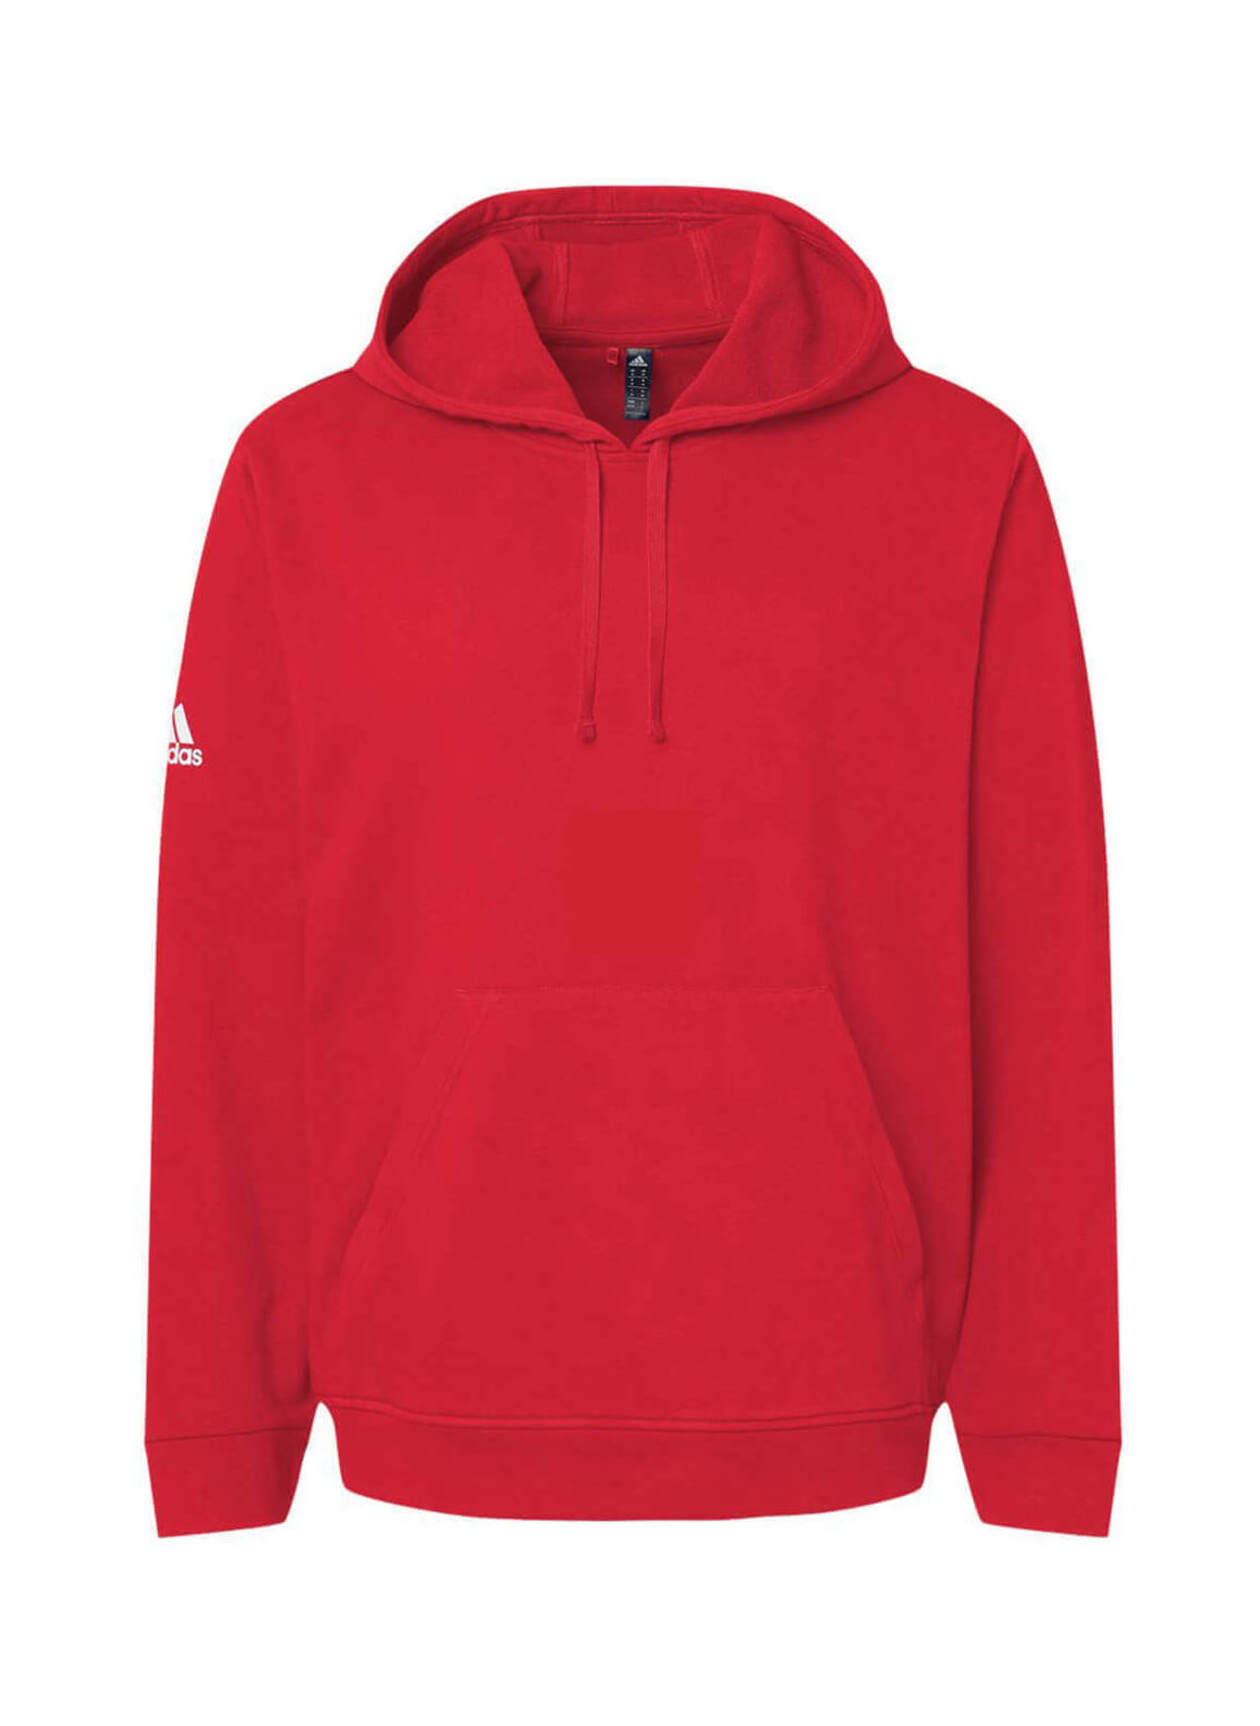 Adidas Men's Red Fleece Hooded Sweatshirt